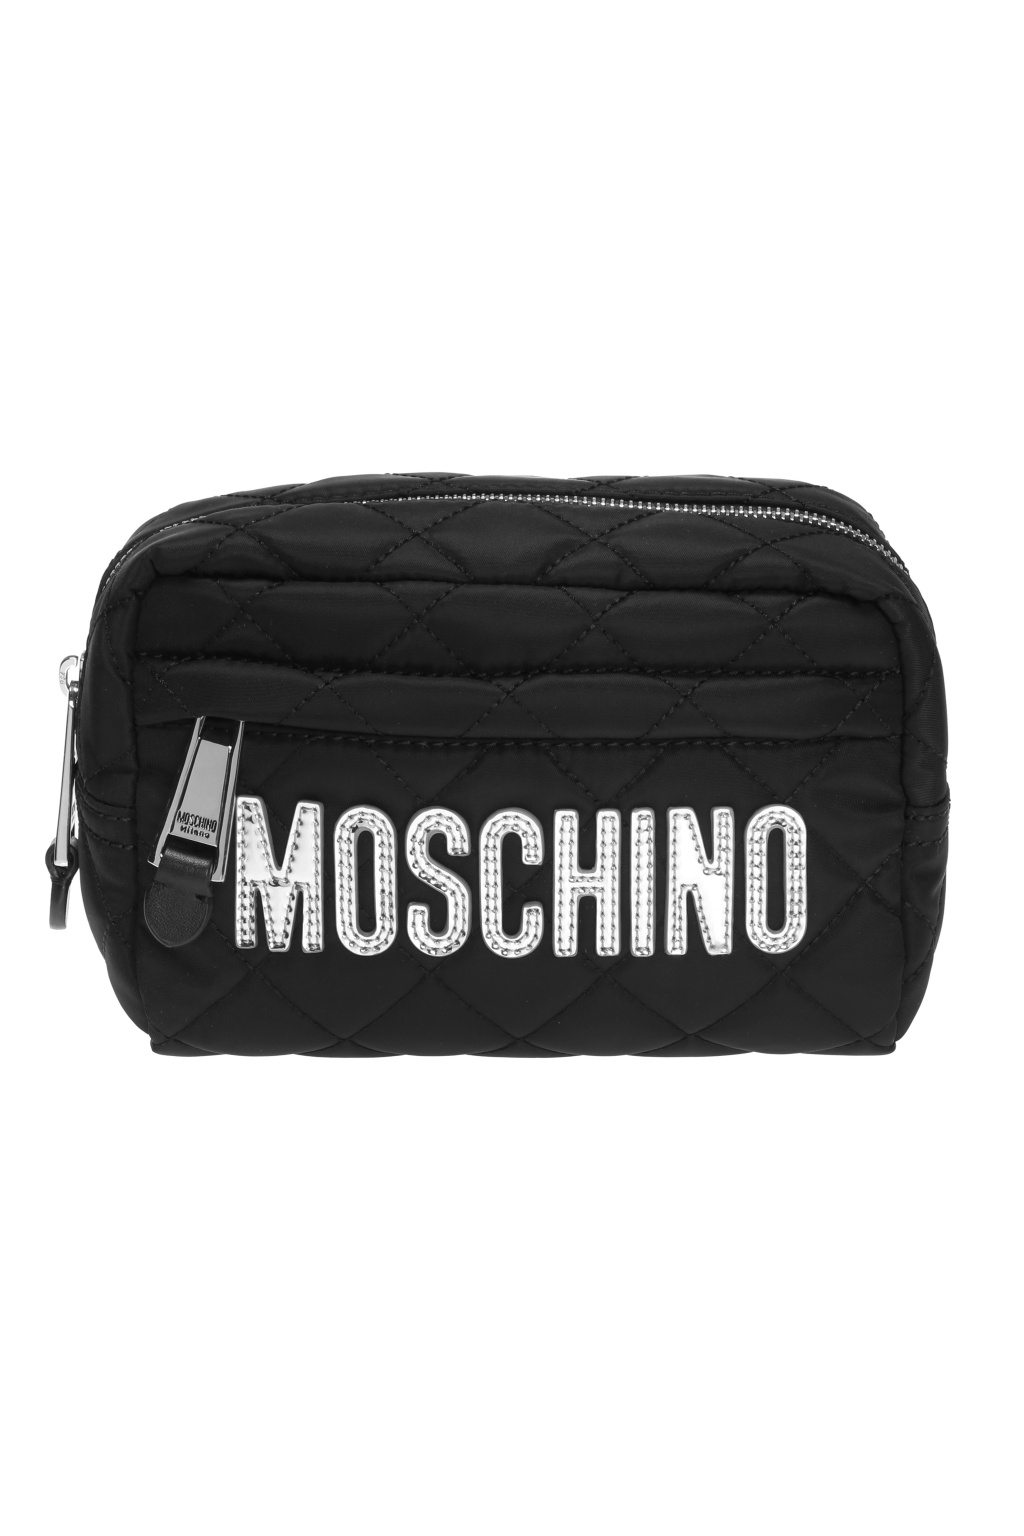 moschino wash bag